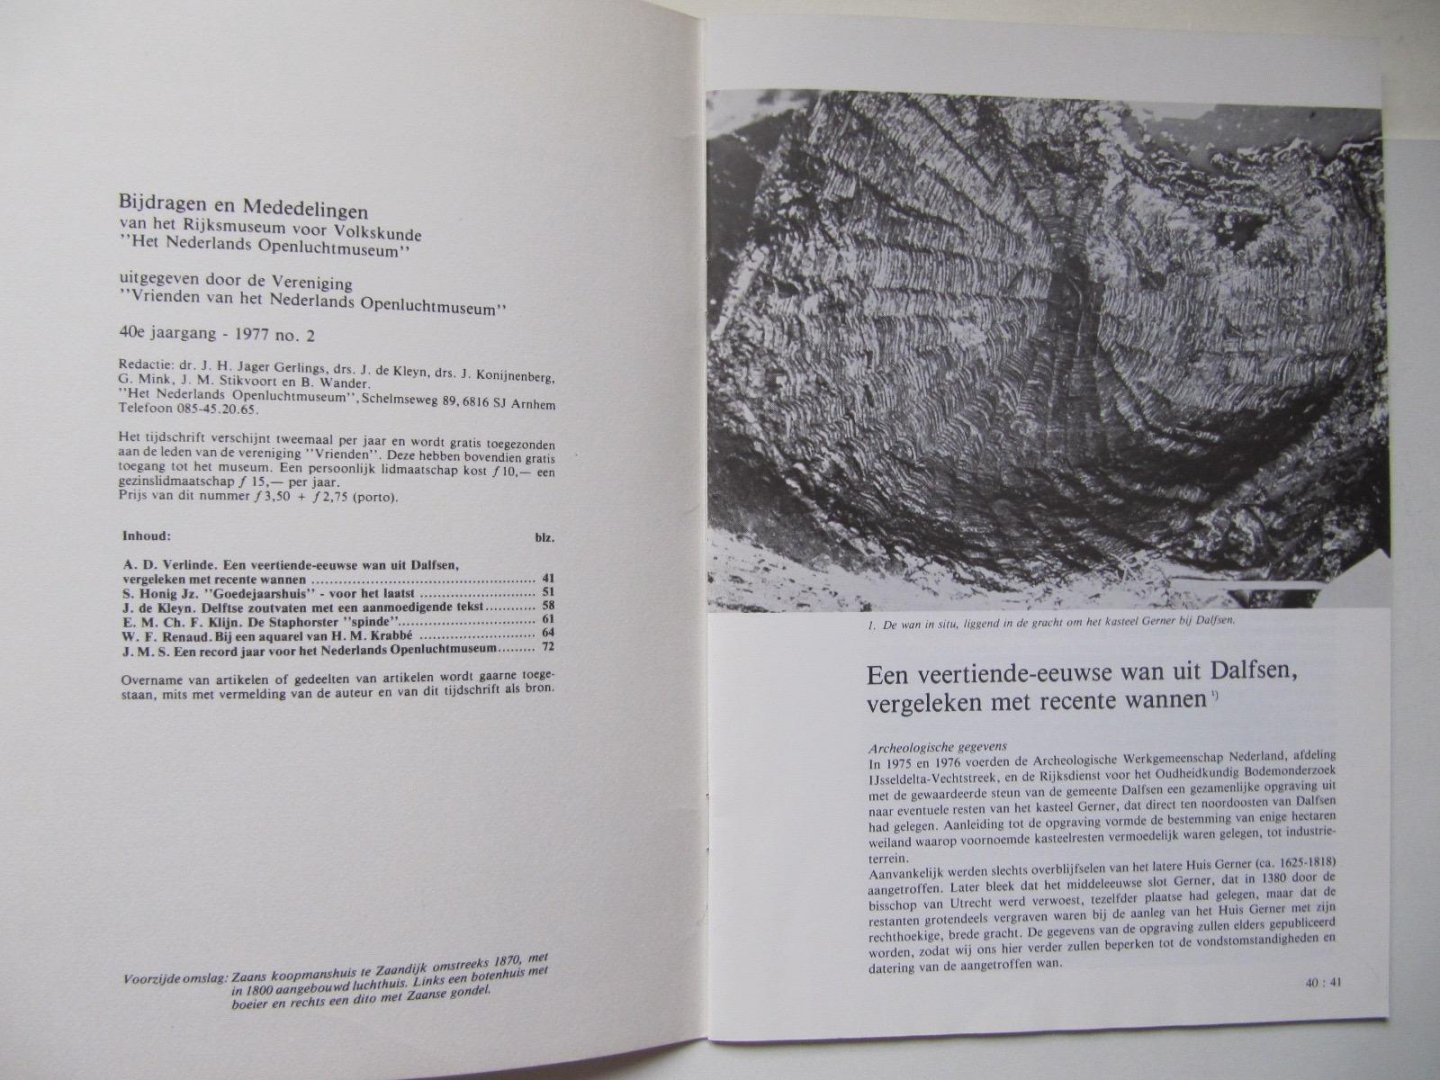 dr. J.H. Jager Gerlings e.a. - B & M. Bijdragen en Mededelingen van het Nederlands Openluchtmuseum 1977:2